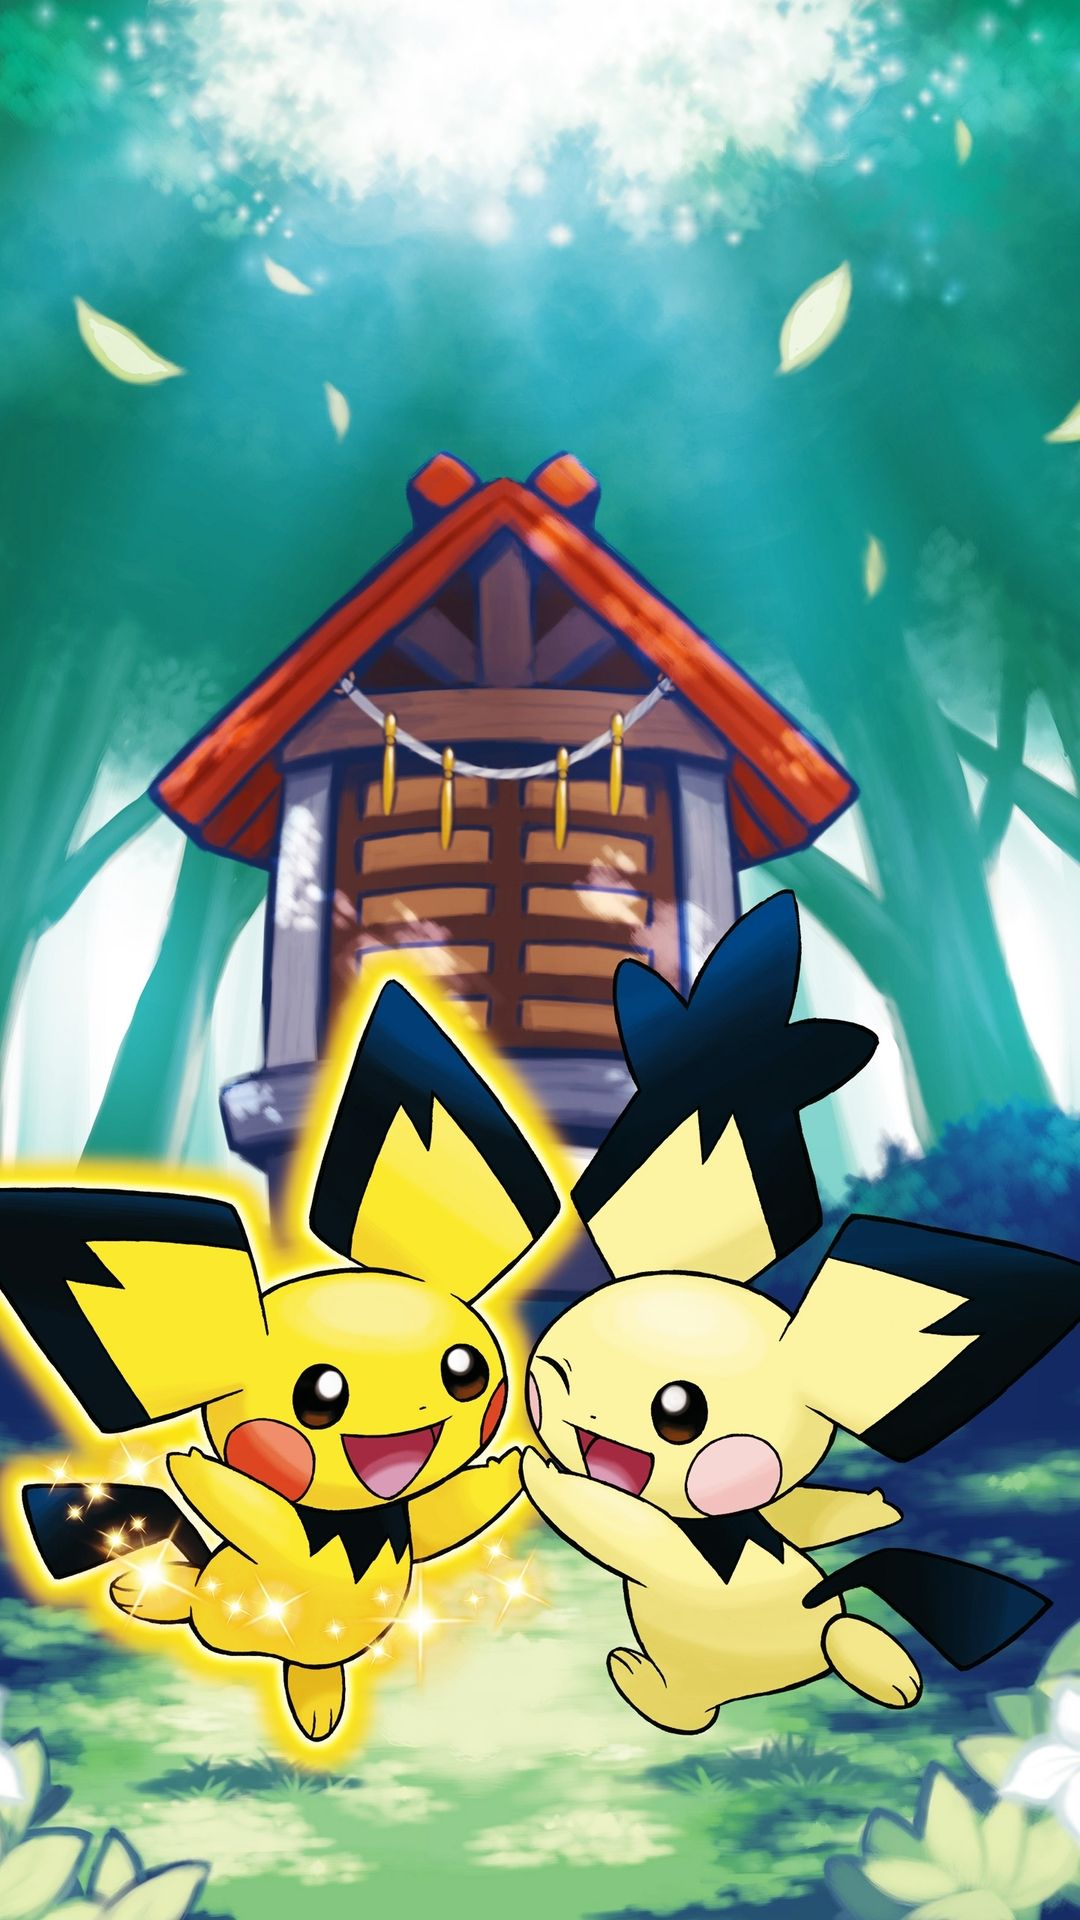 Pokemon Pichu Galaxy S4 Wallpaper (1080×1920)